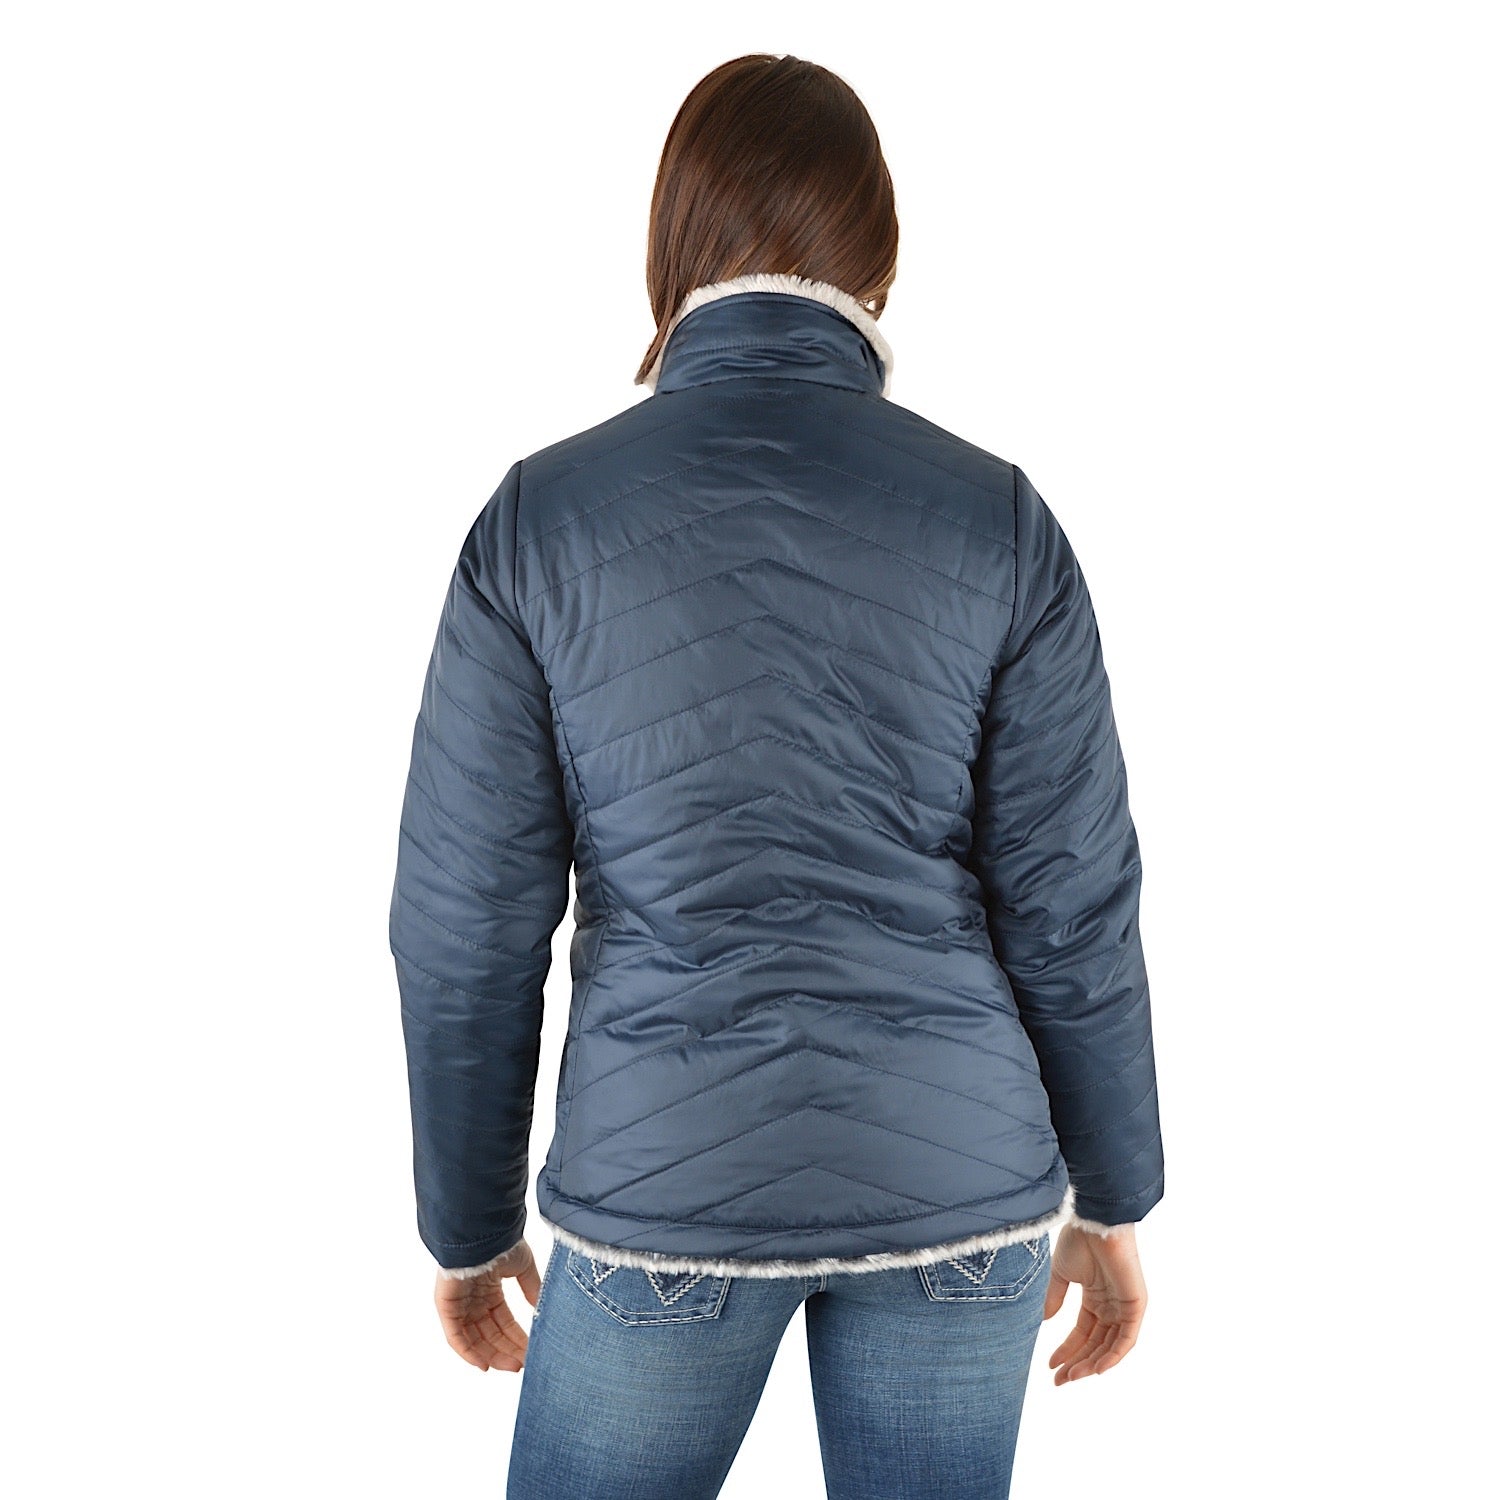 Buy Wrangler Womens Maya Reversible Jacket Navy/Grey - The Stable Door